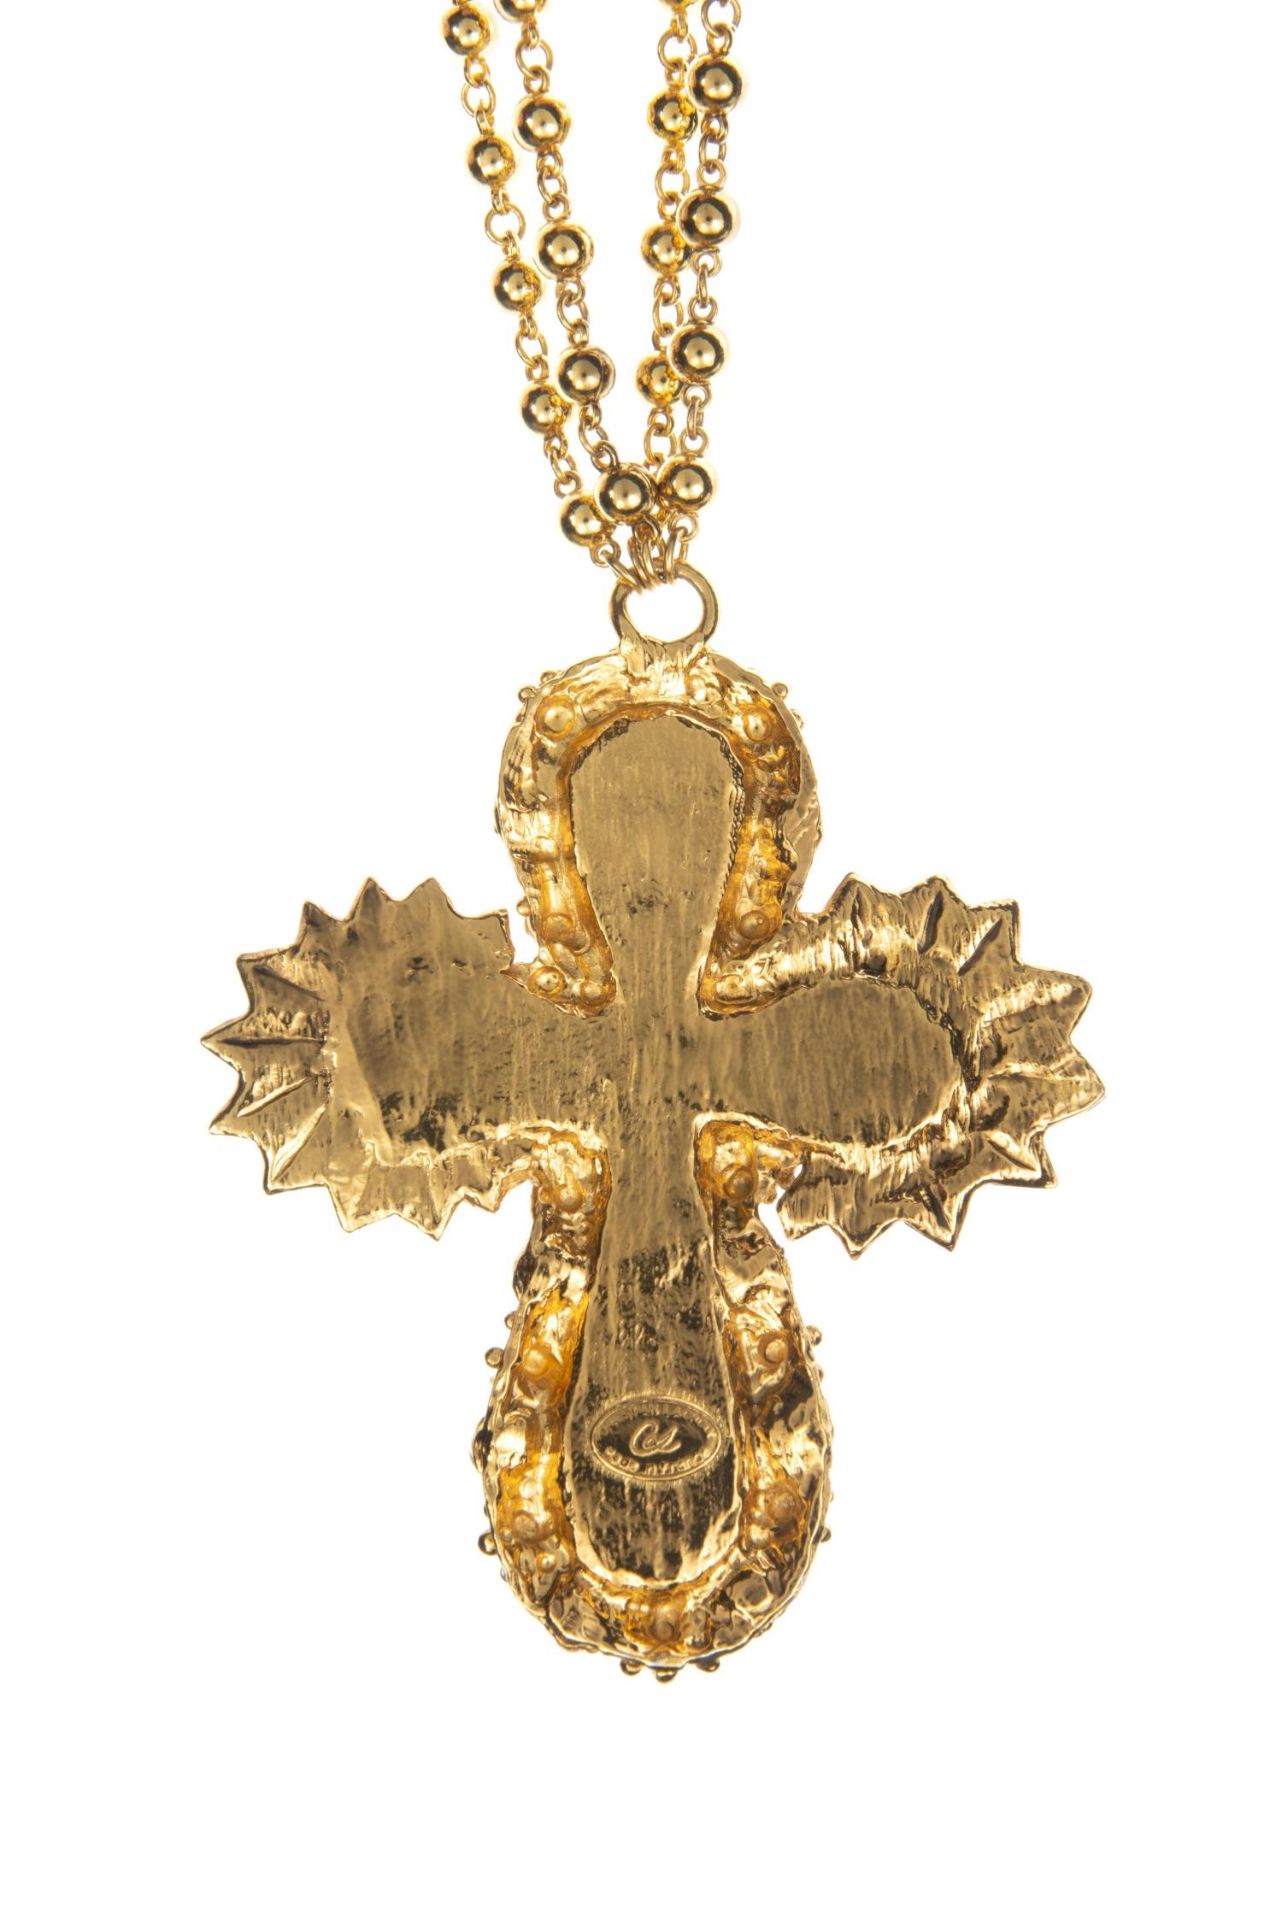 Christian LACROIX, Collier avec médaillon en croix, 1970... - Image 2 of 5